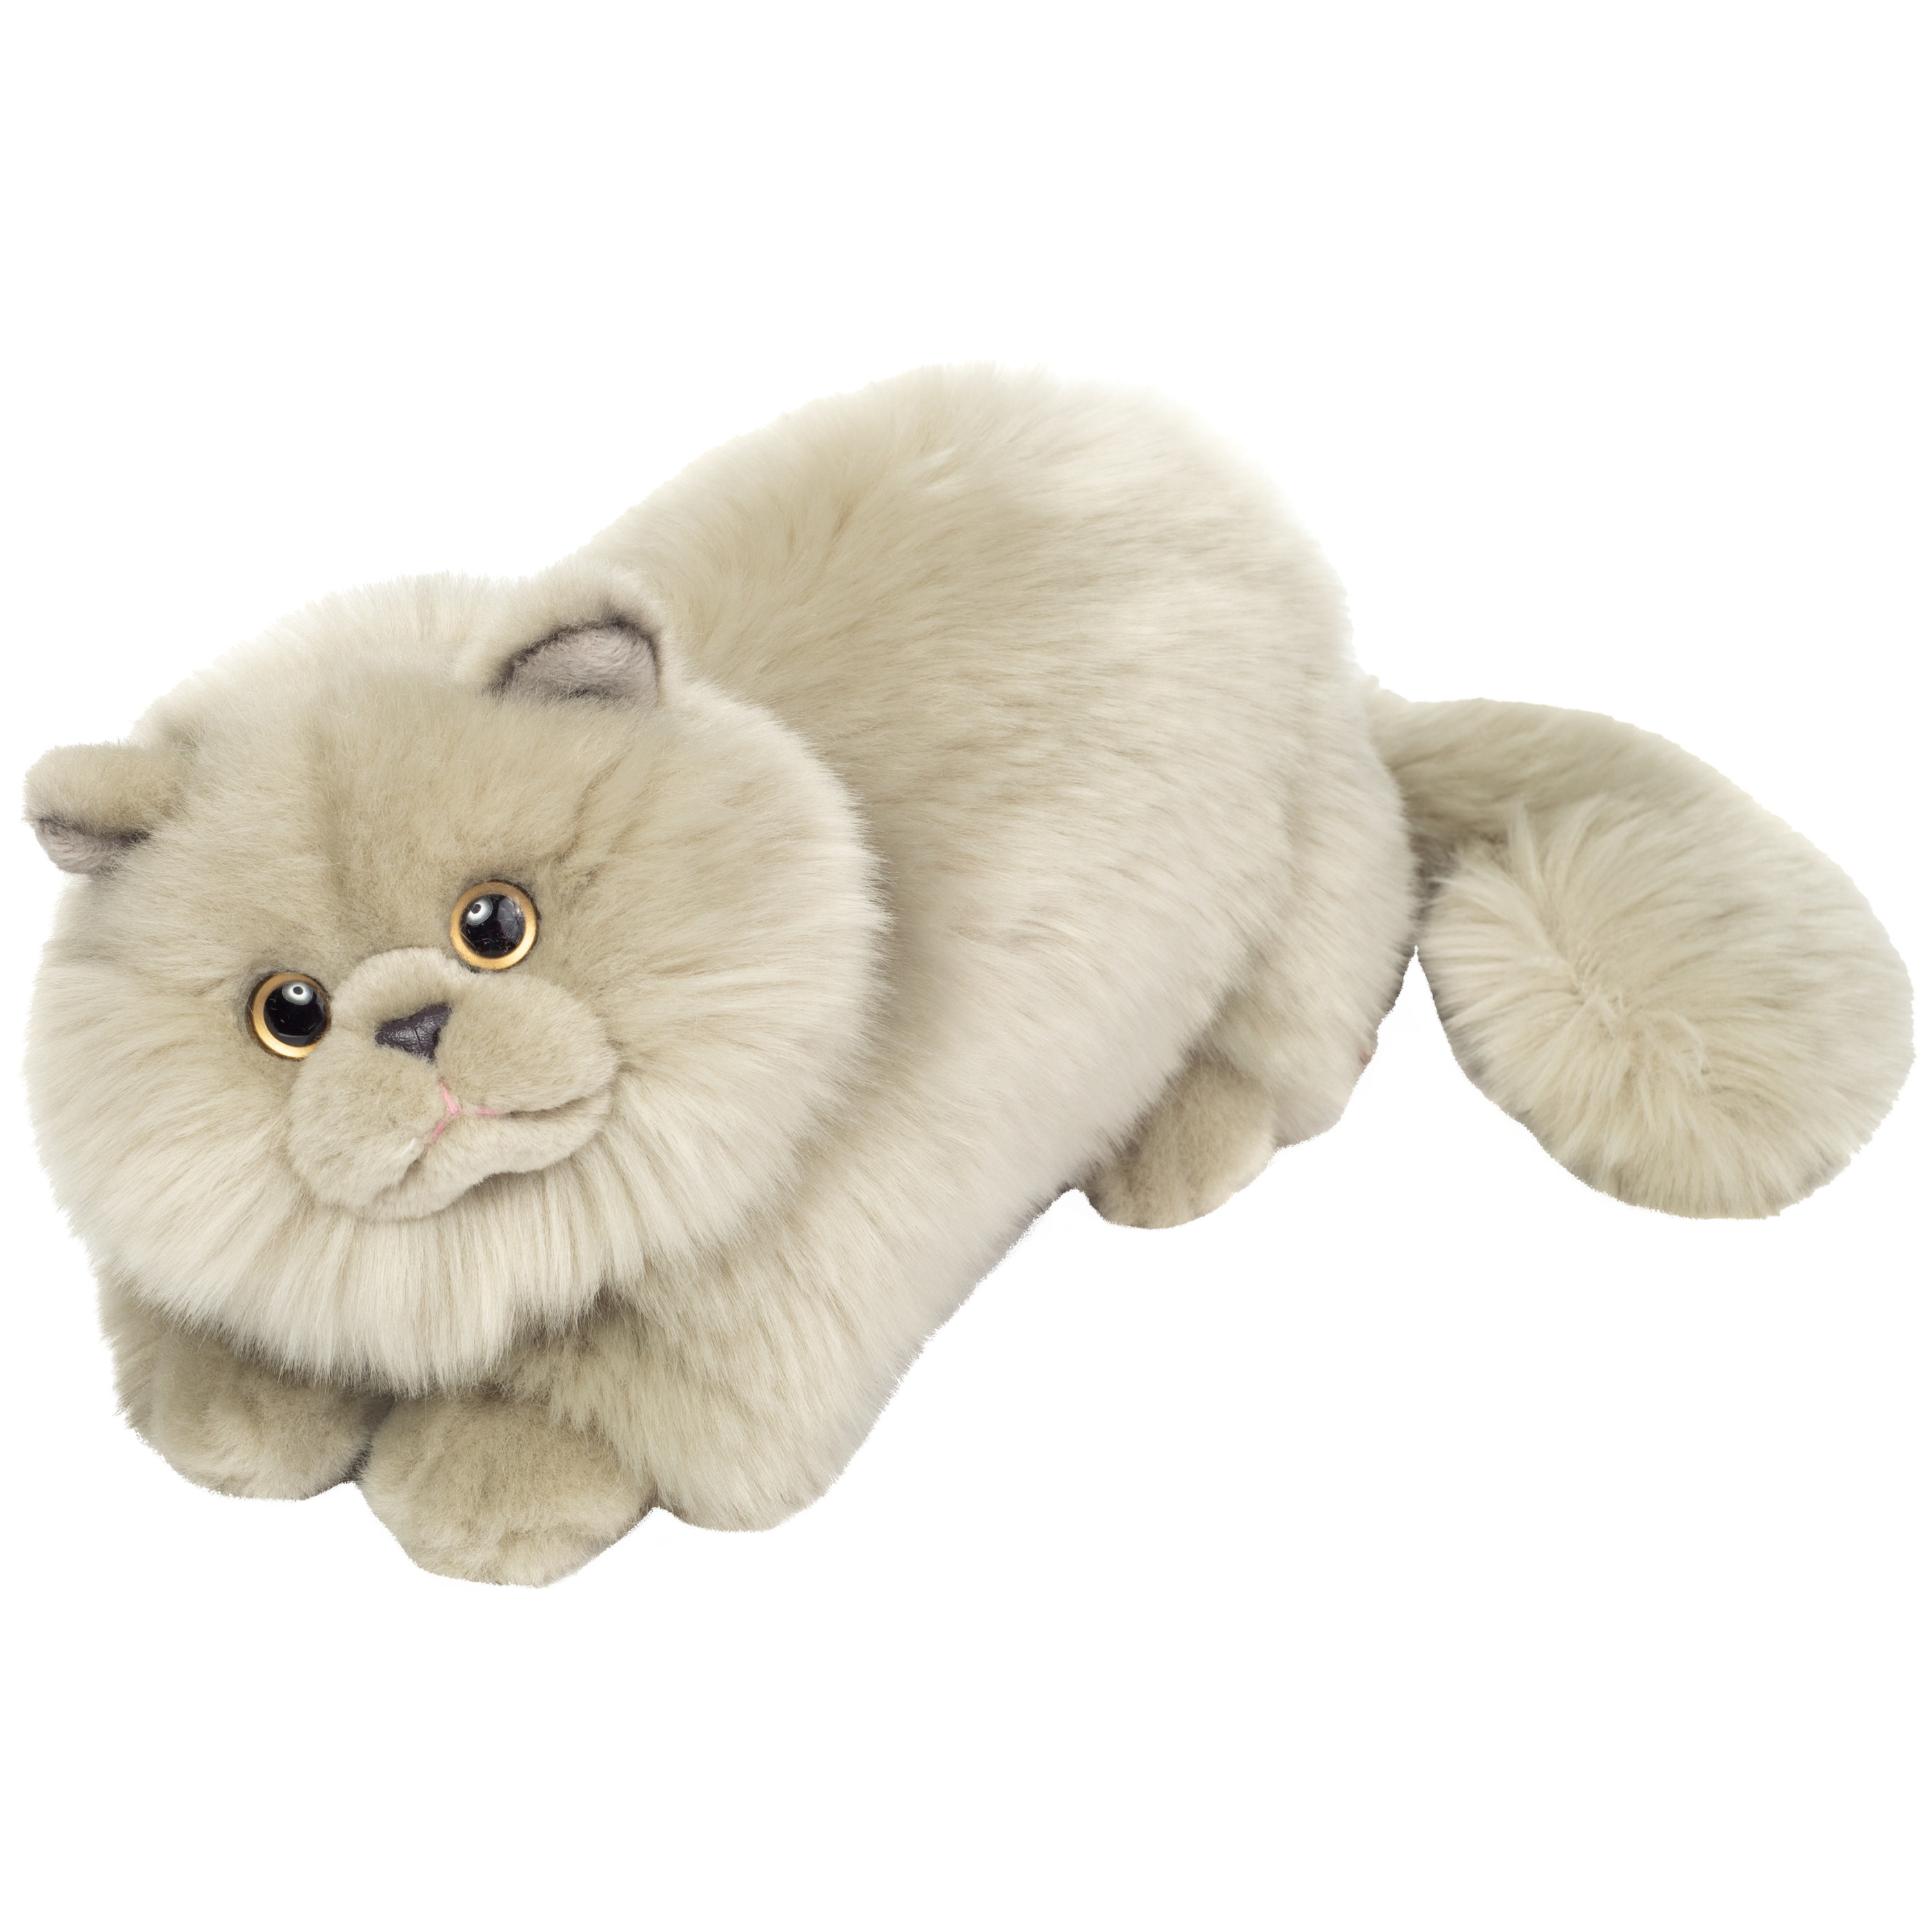 Knuffeldier Perzische kat-poes zachte pluche stof premium kwaliteit knuffels grijs 24 cm